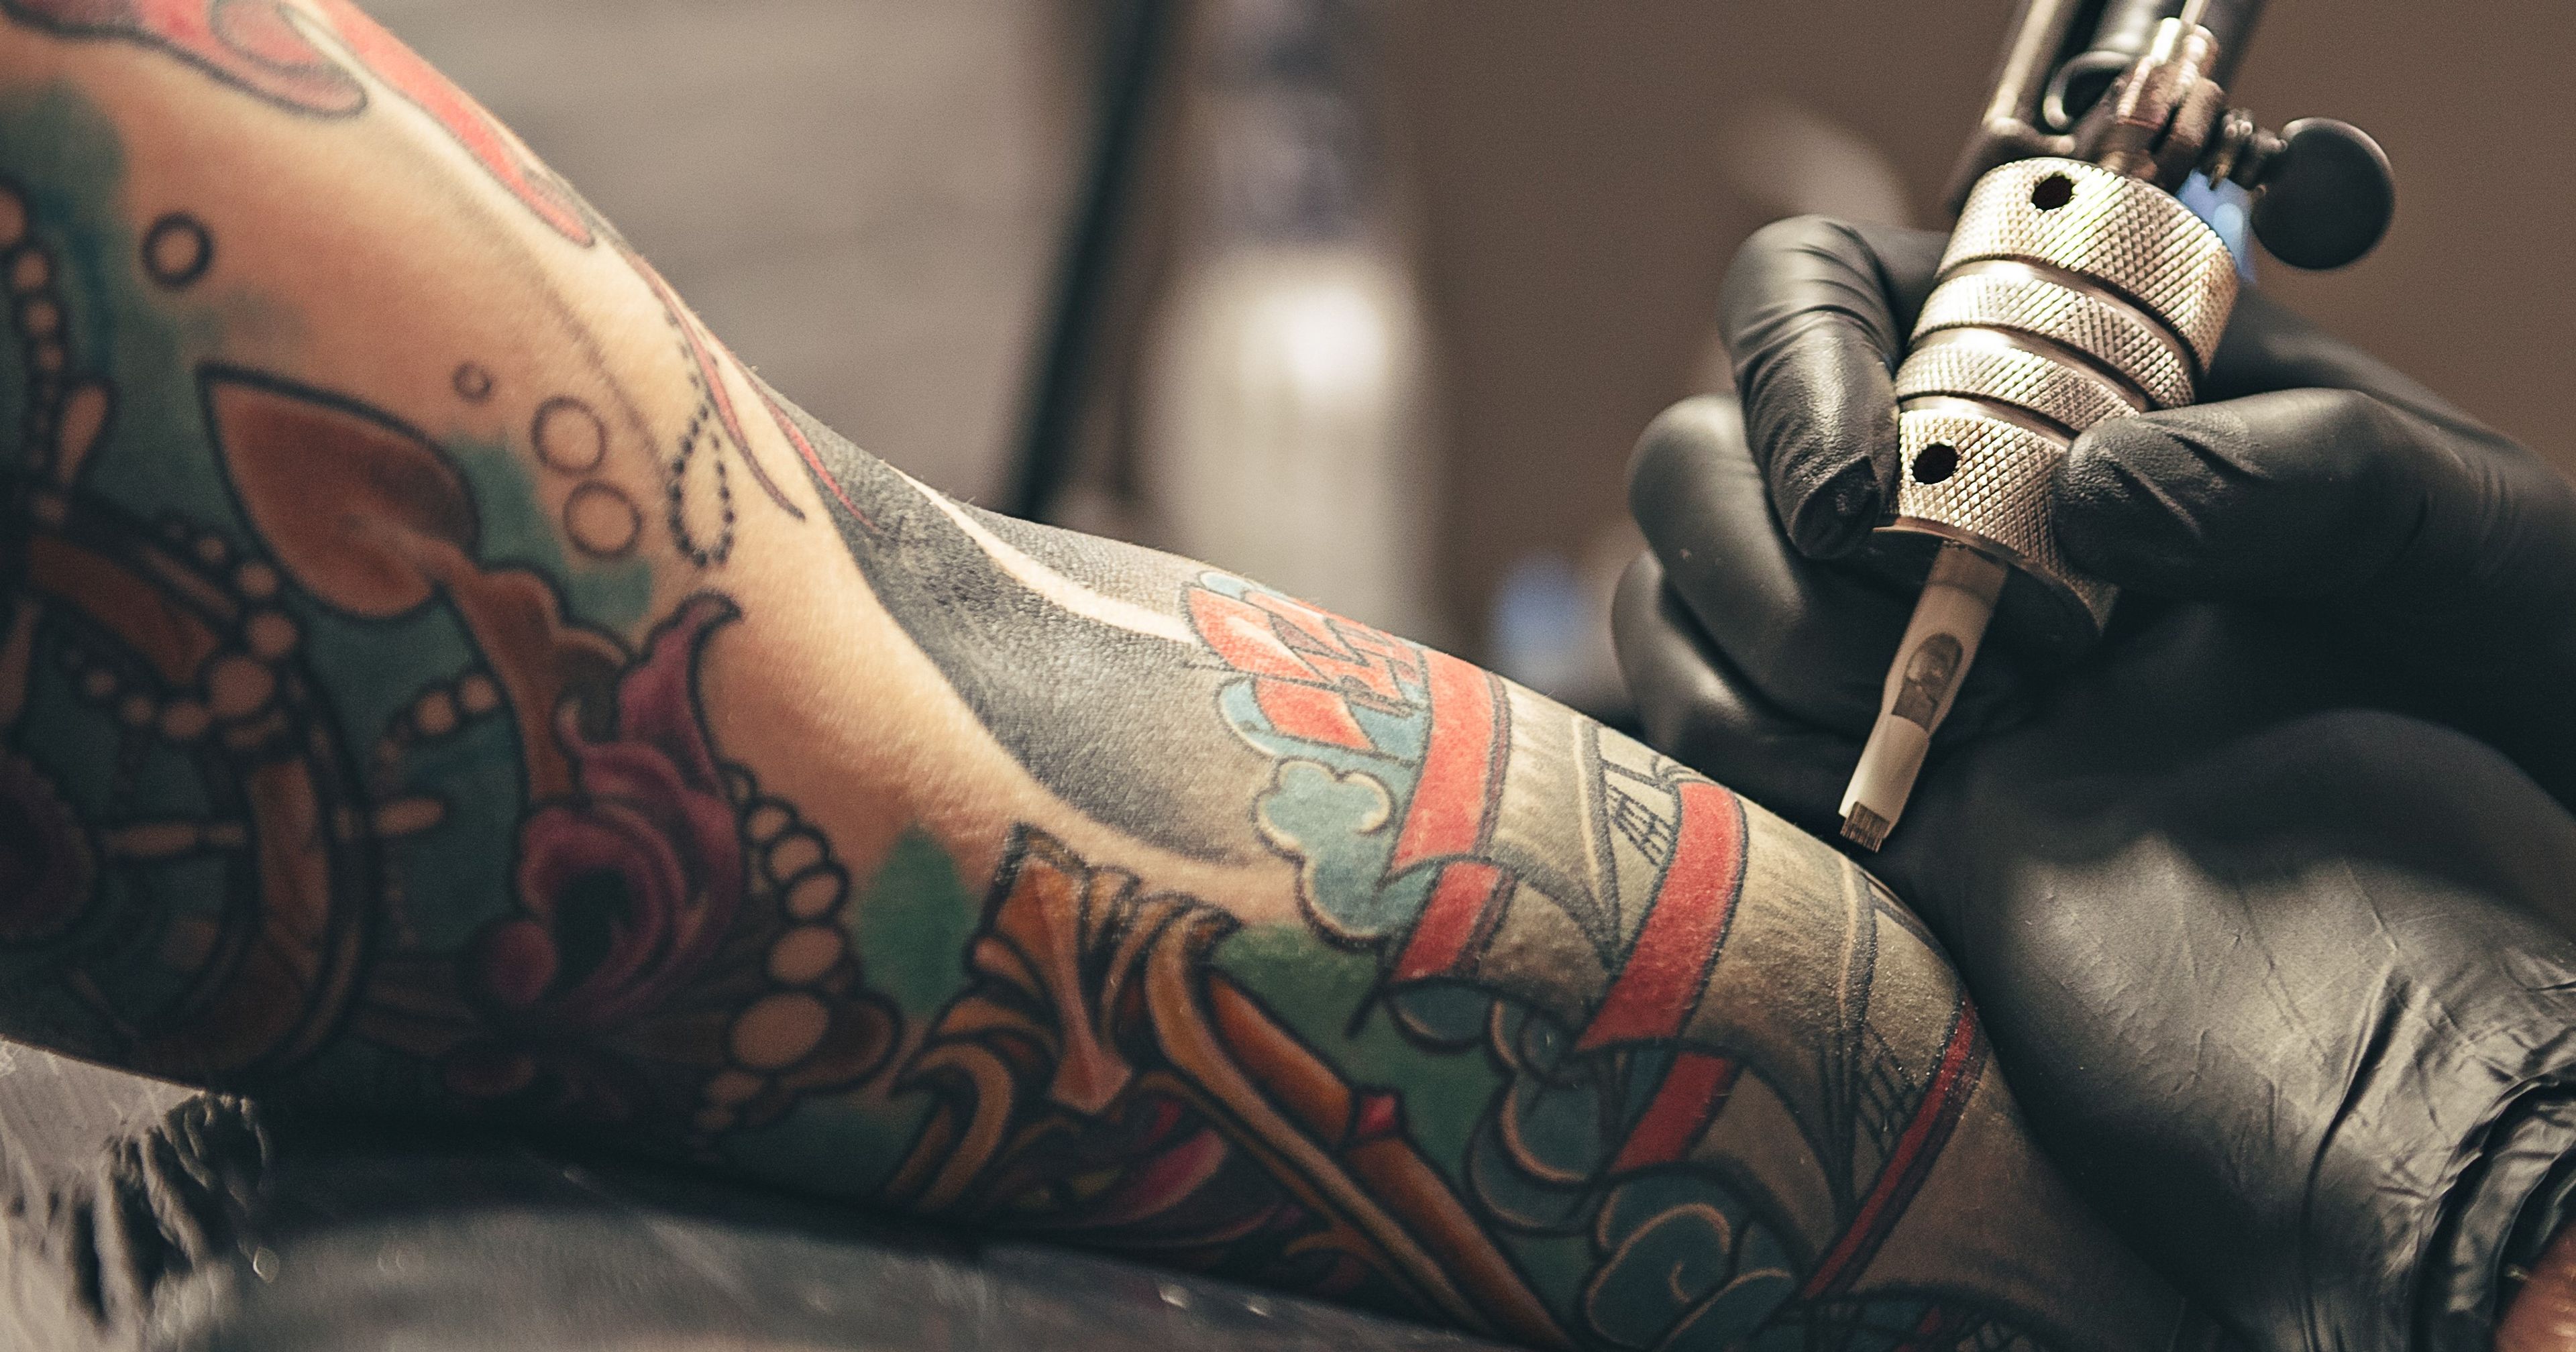 Tattoo Studios in Malsch